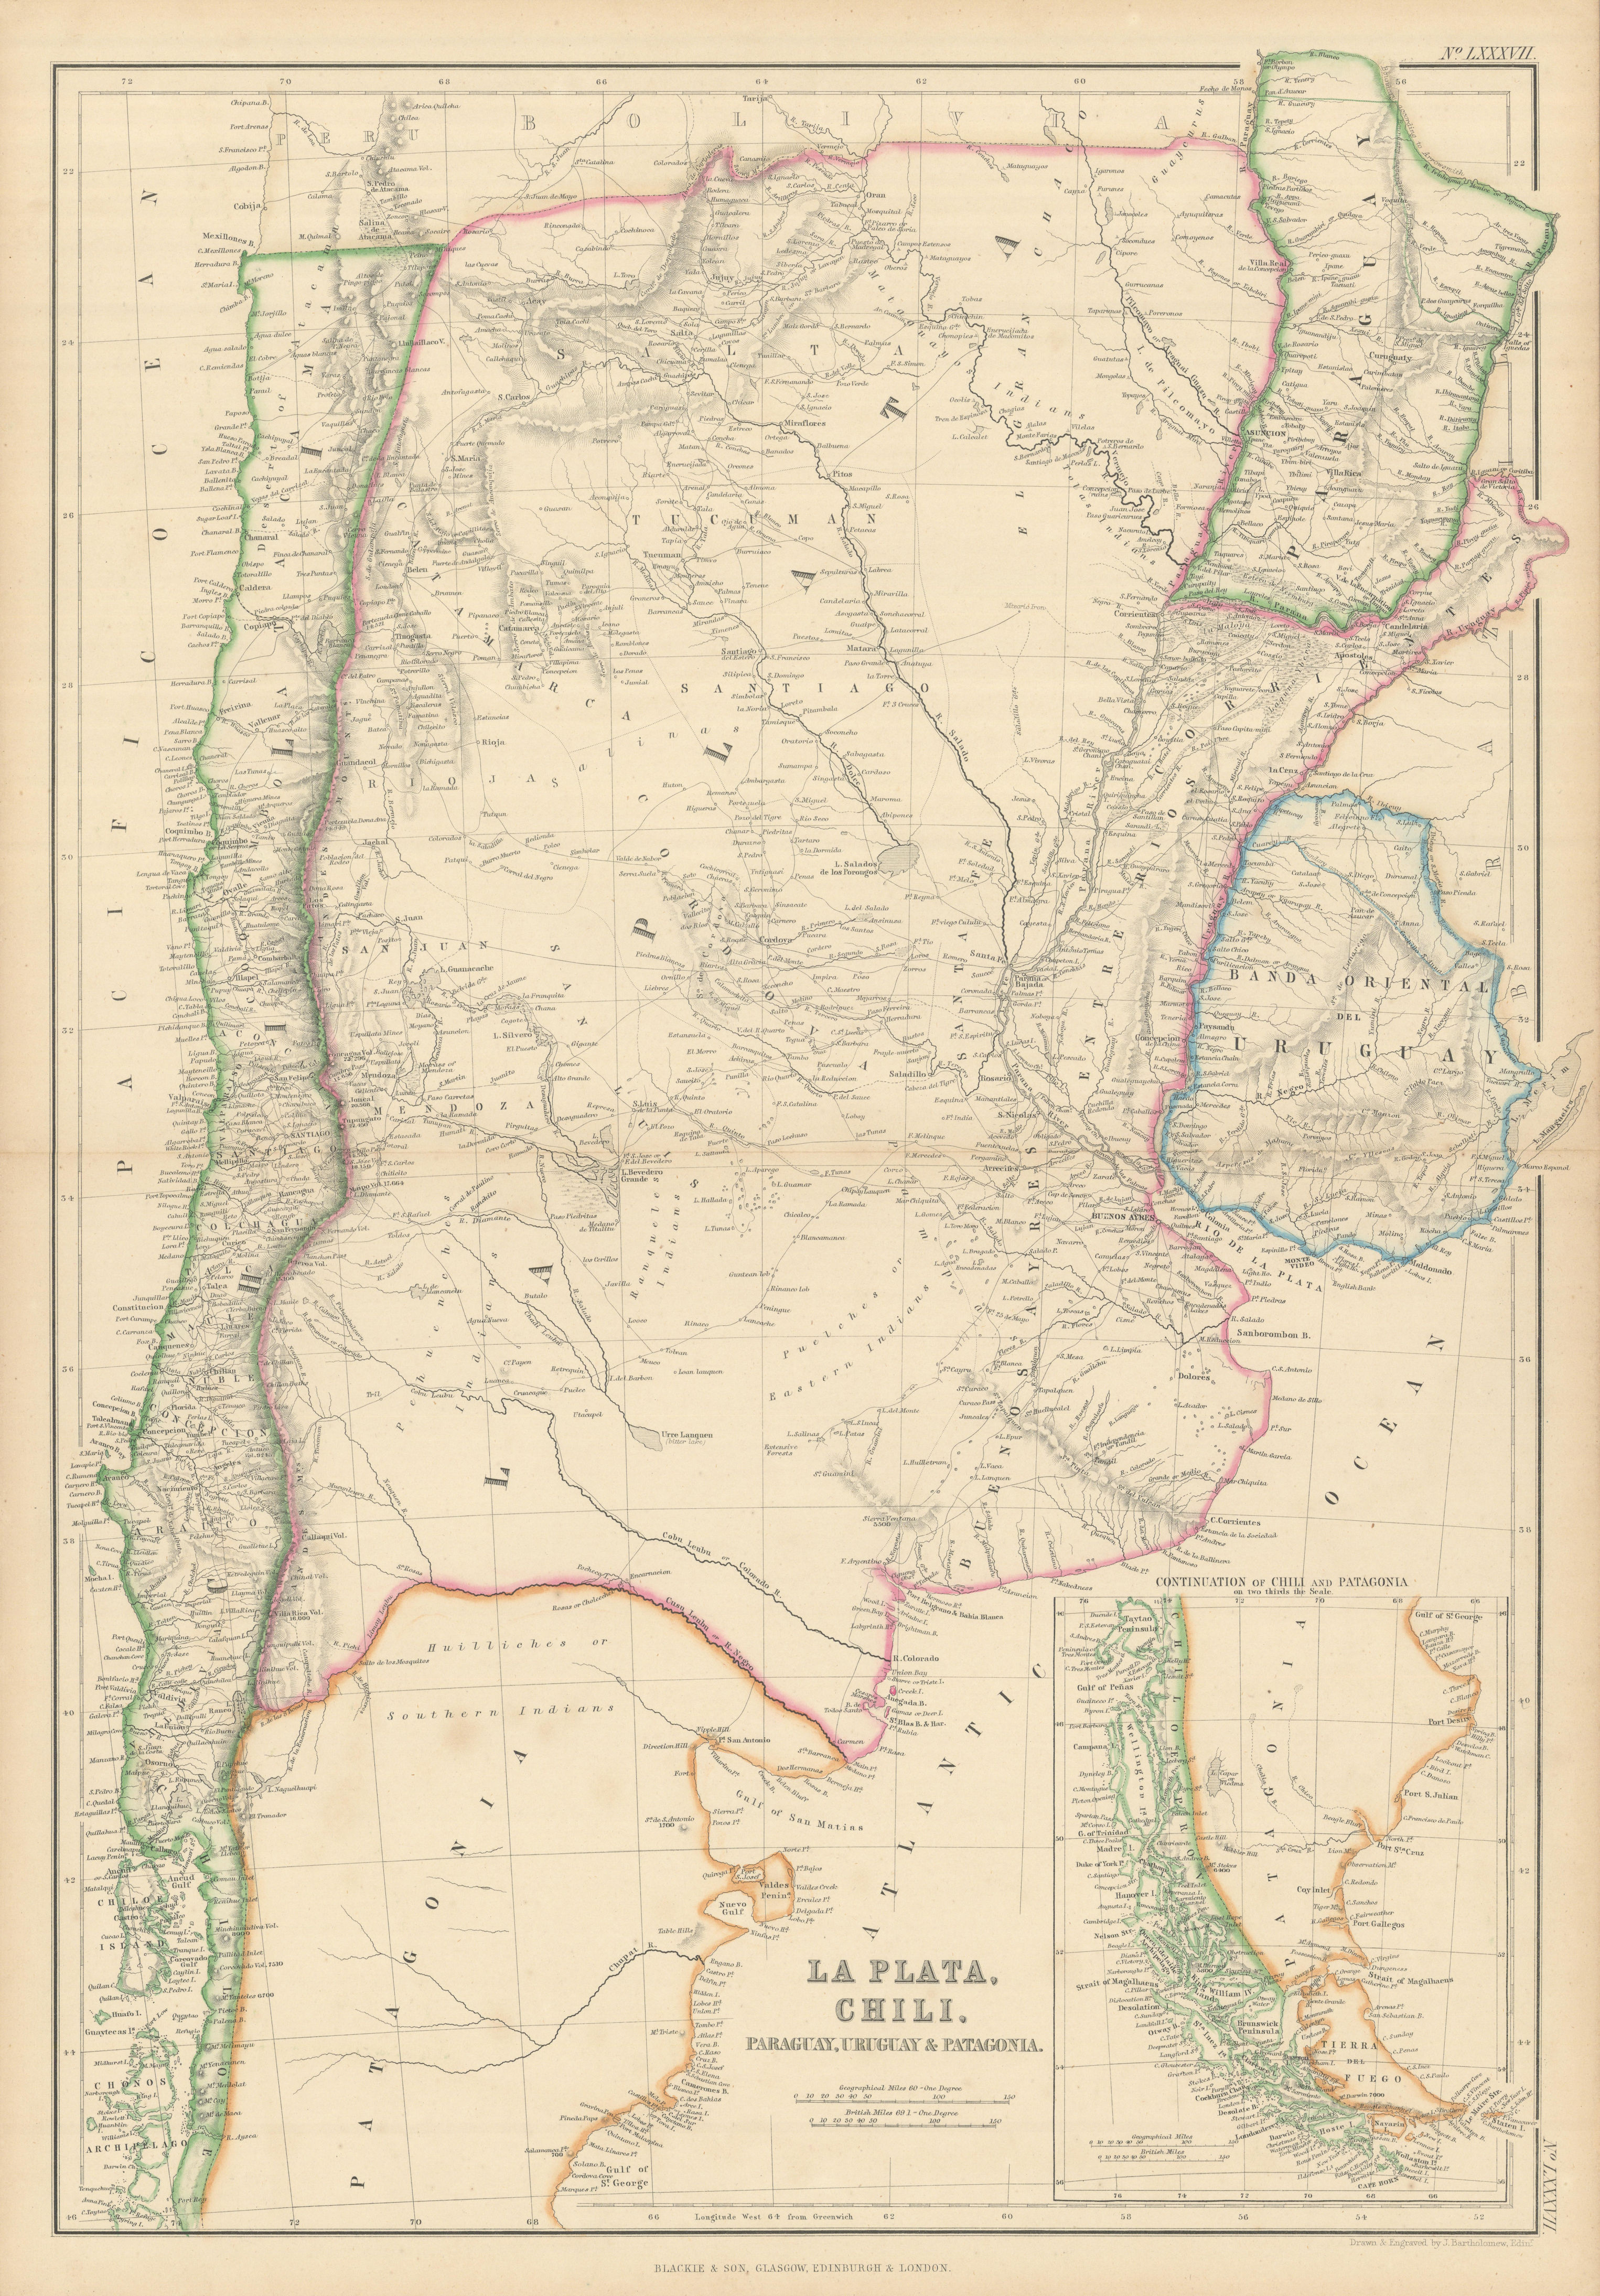 Associate Product La Plata, Chili, Paraguay, Uruguay… Argentina Chile. BARTHOLOMEW 1860 old map